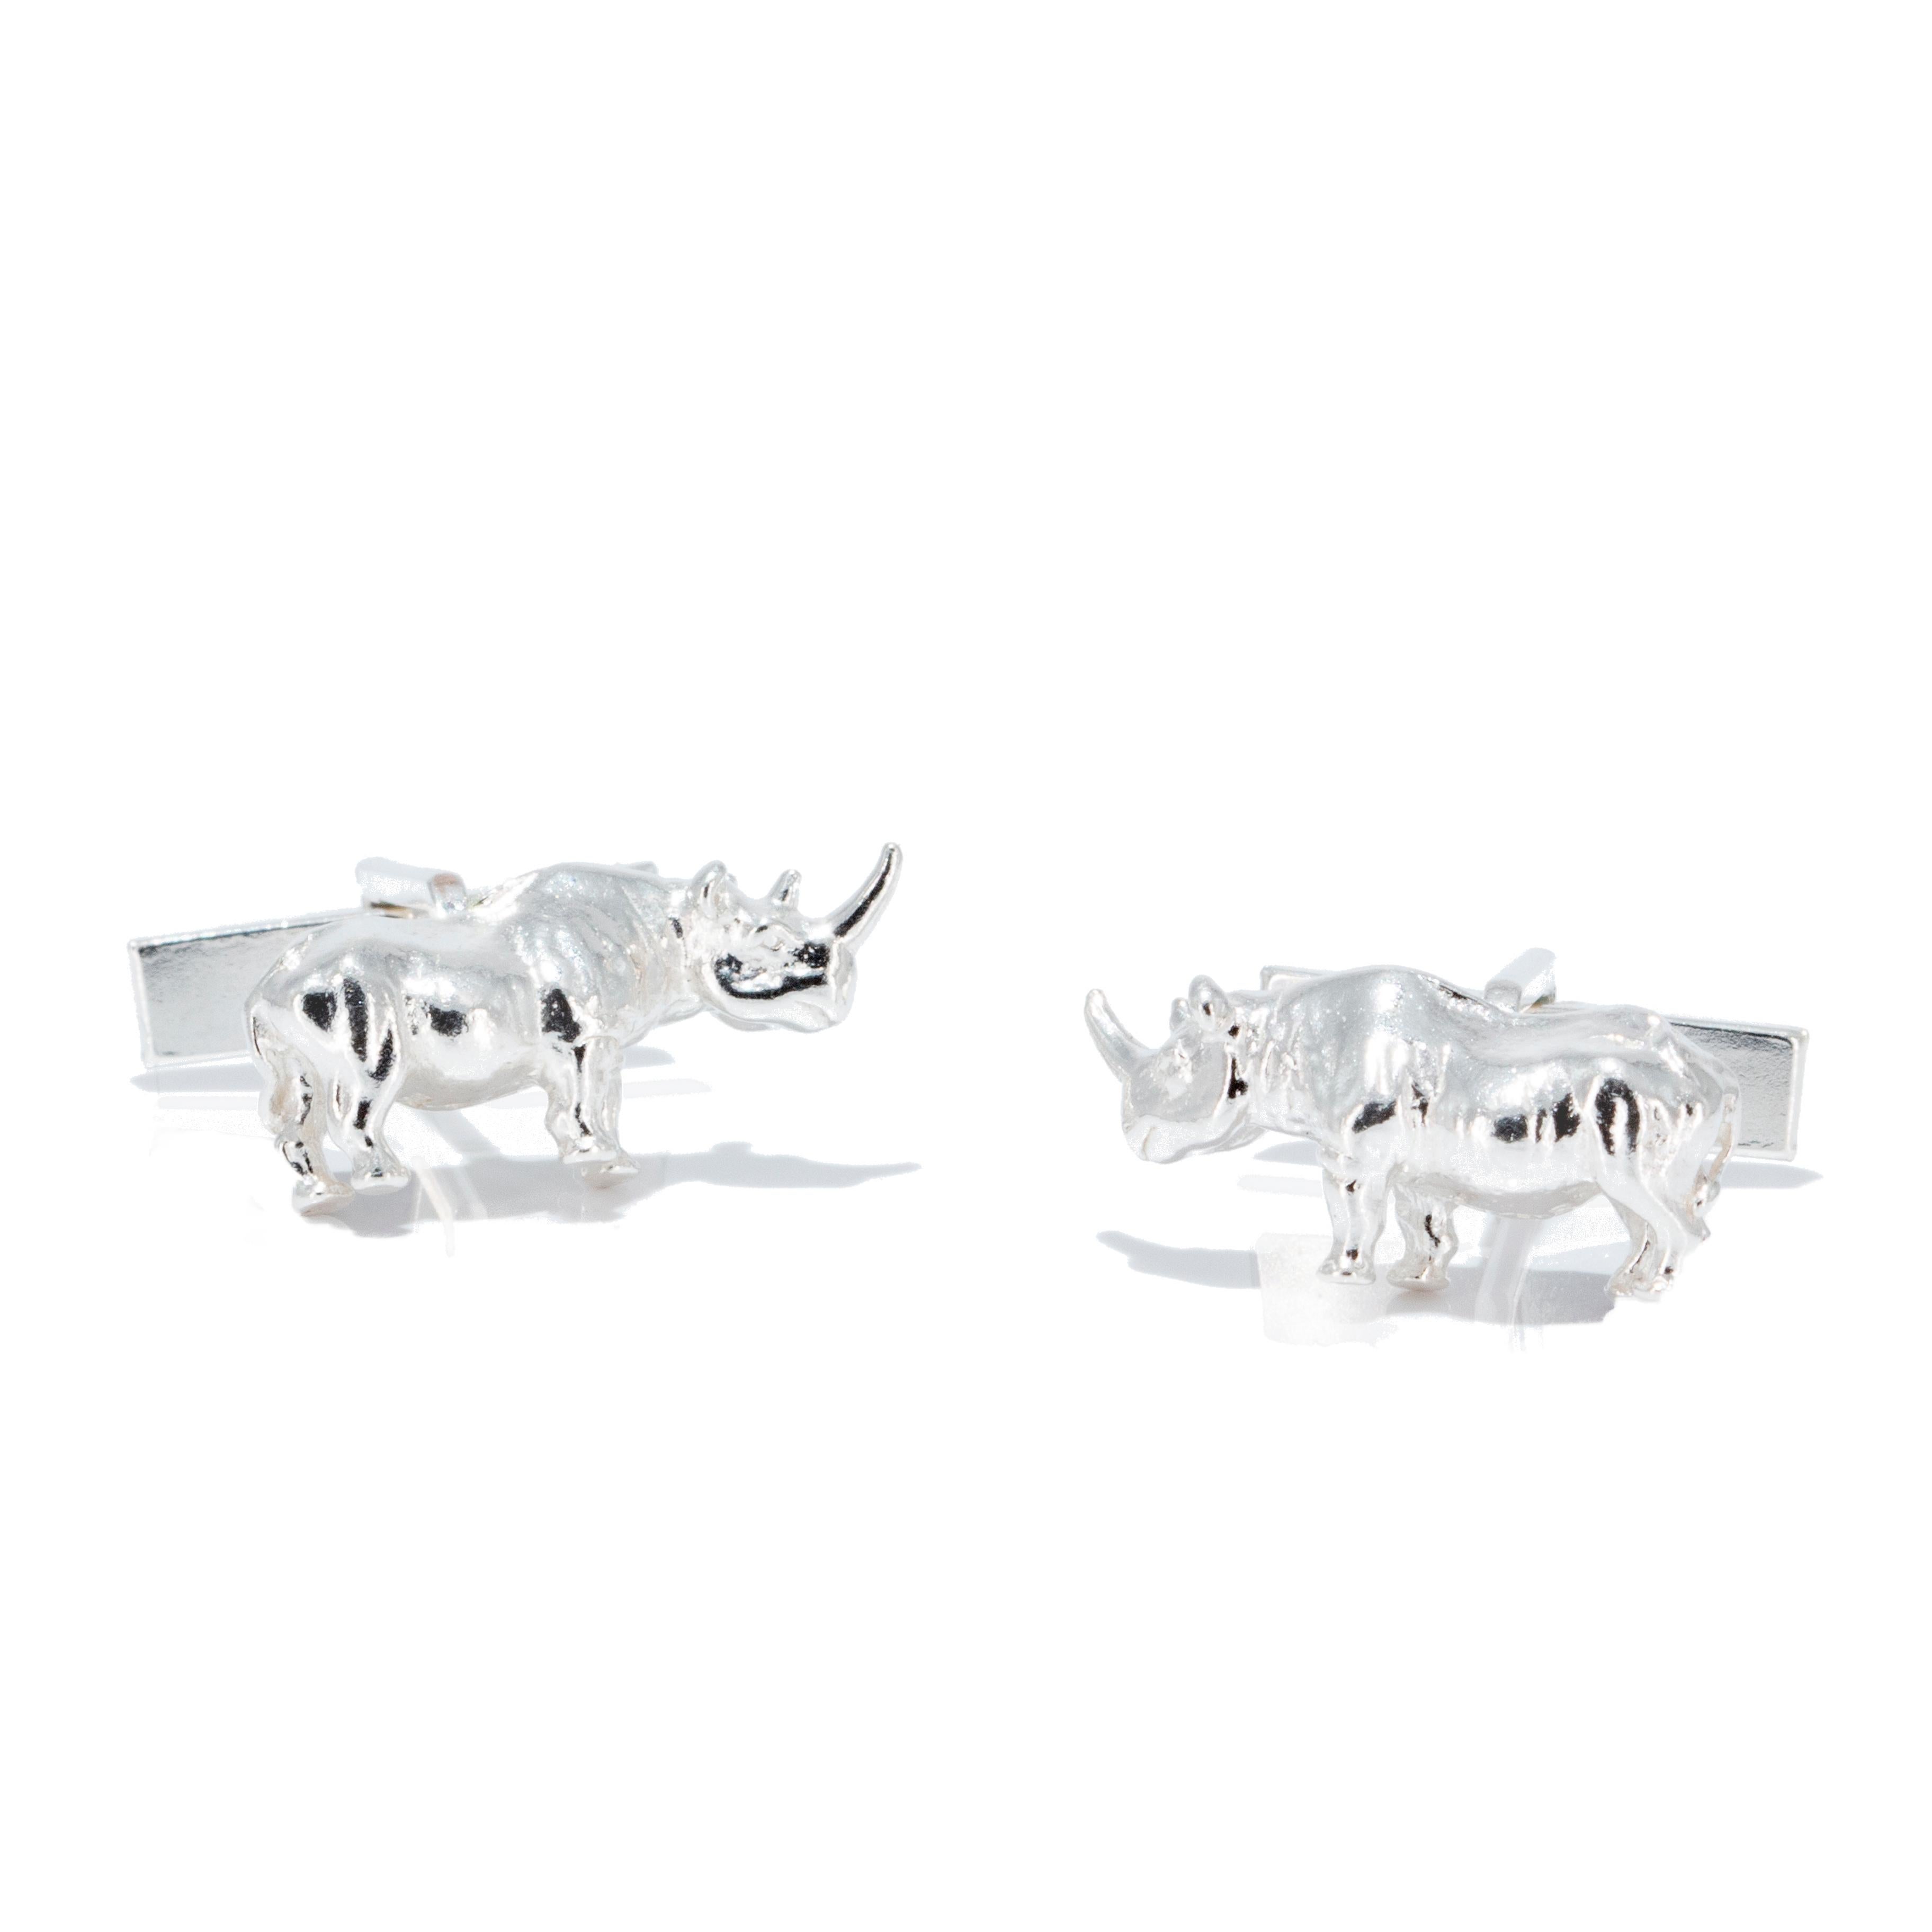 Men's Rhinoceros Cufflinks in Solid Sterling Silver For Sale